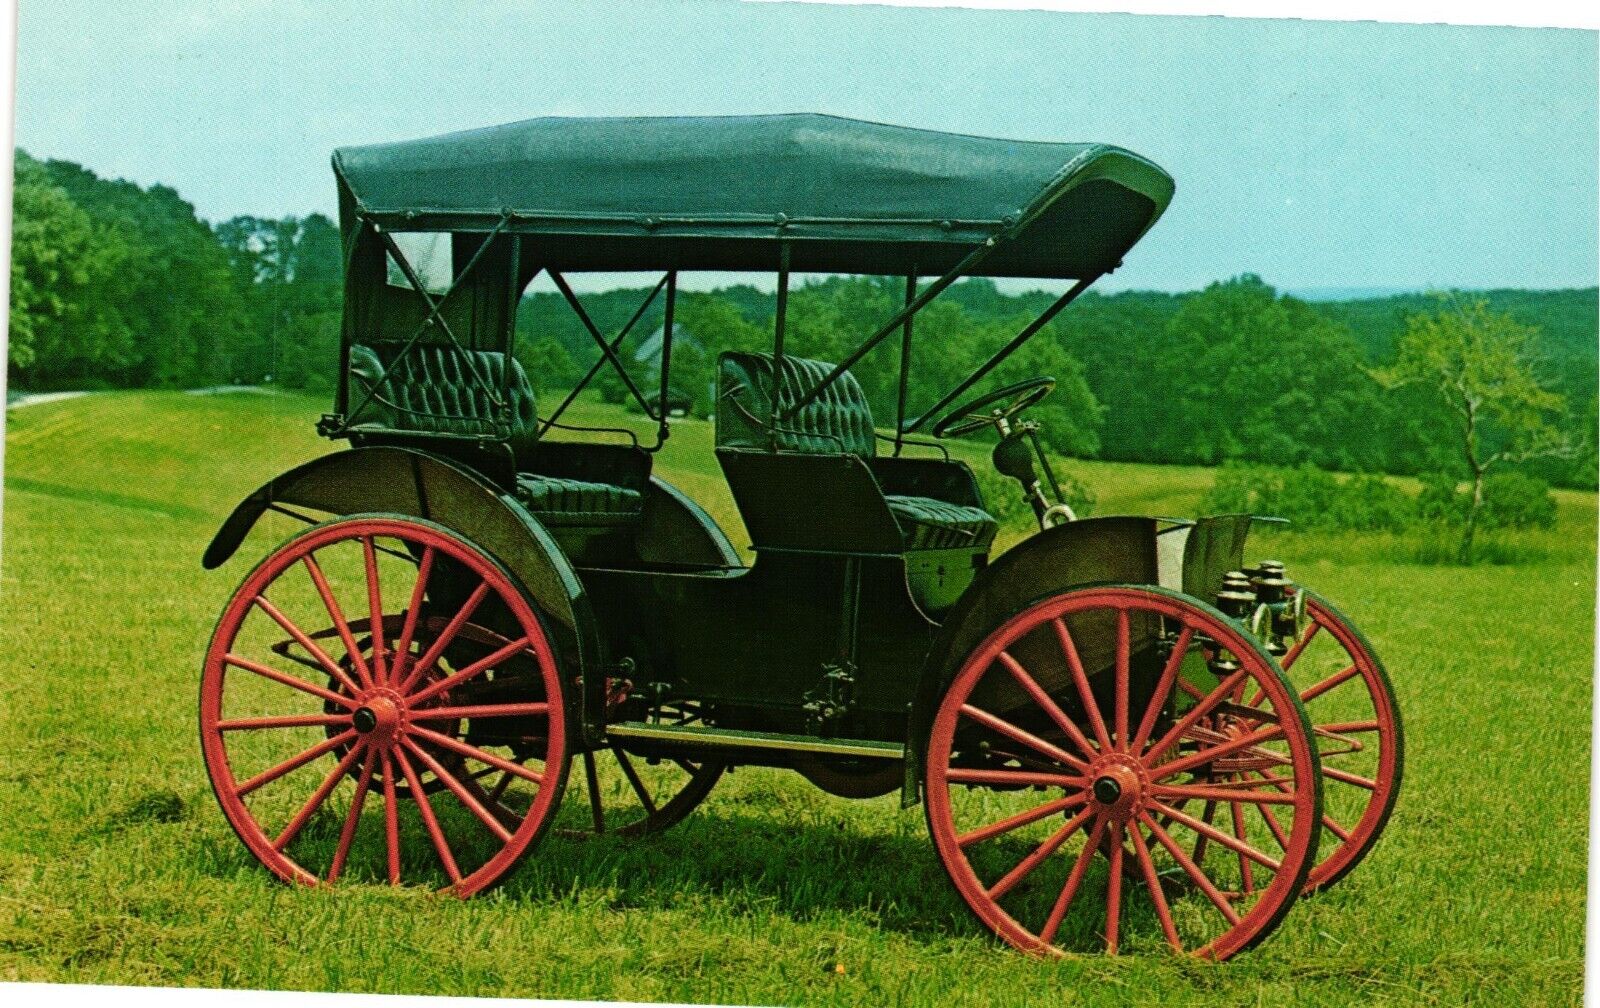 1908 International Harvester Automobile Buggy Antique Car Vintage Postcard